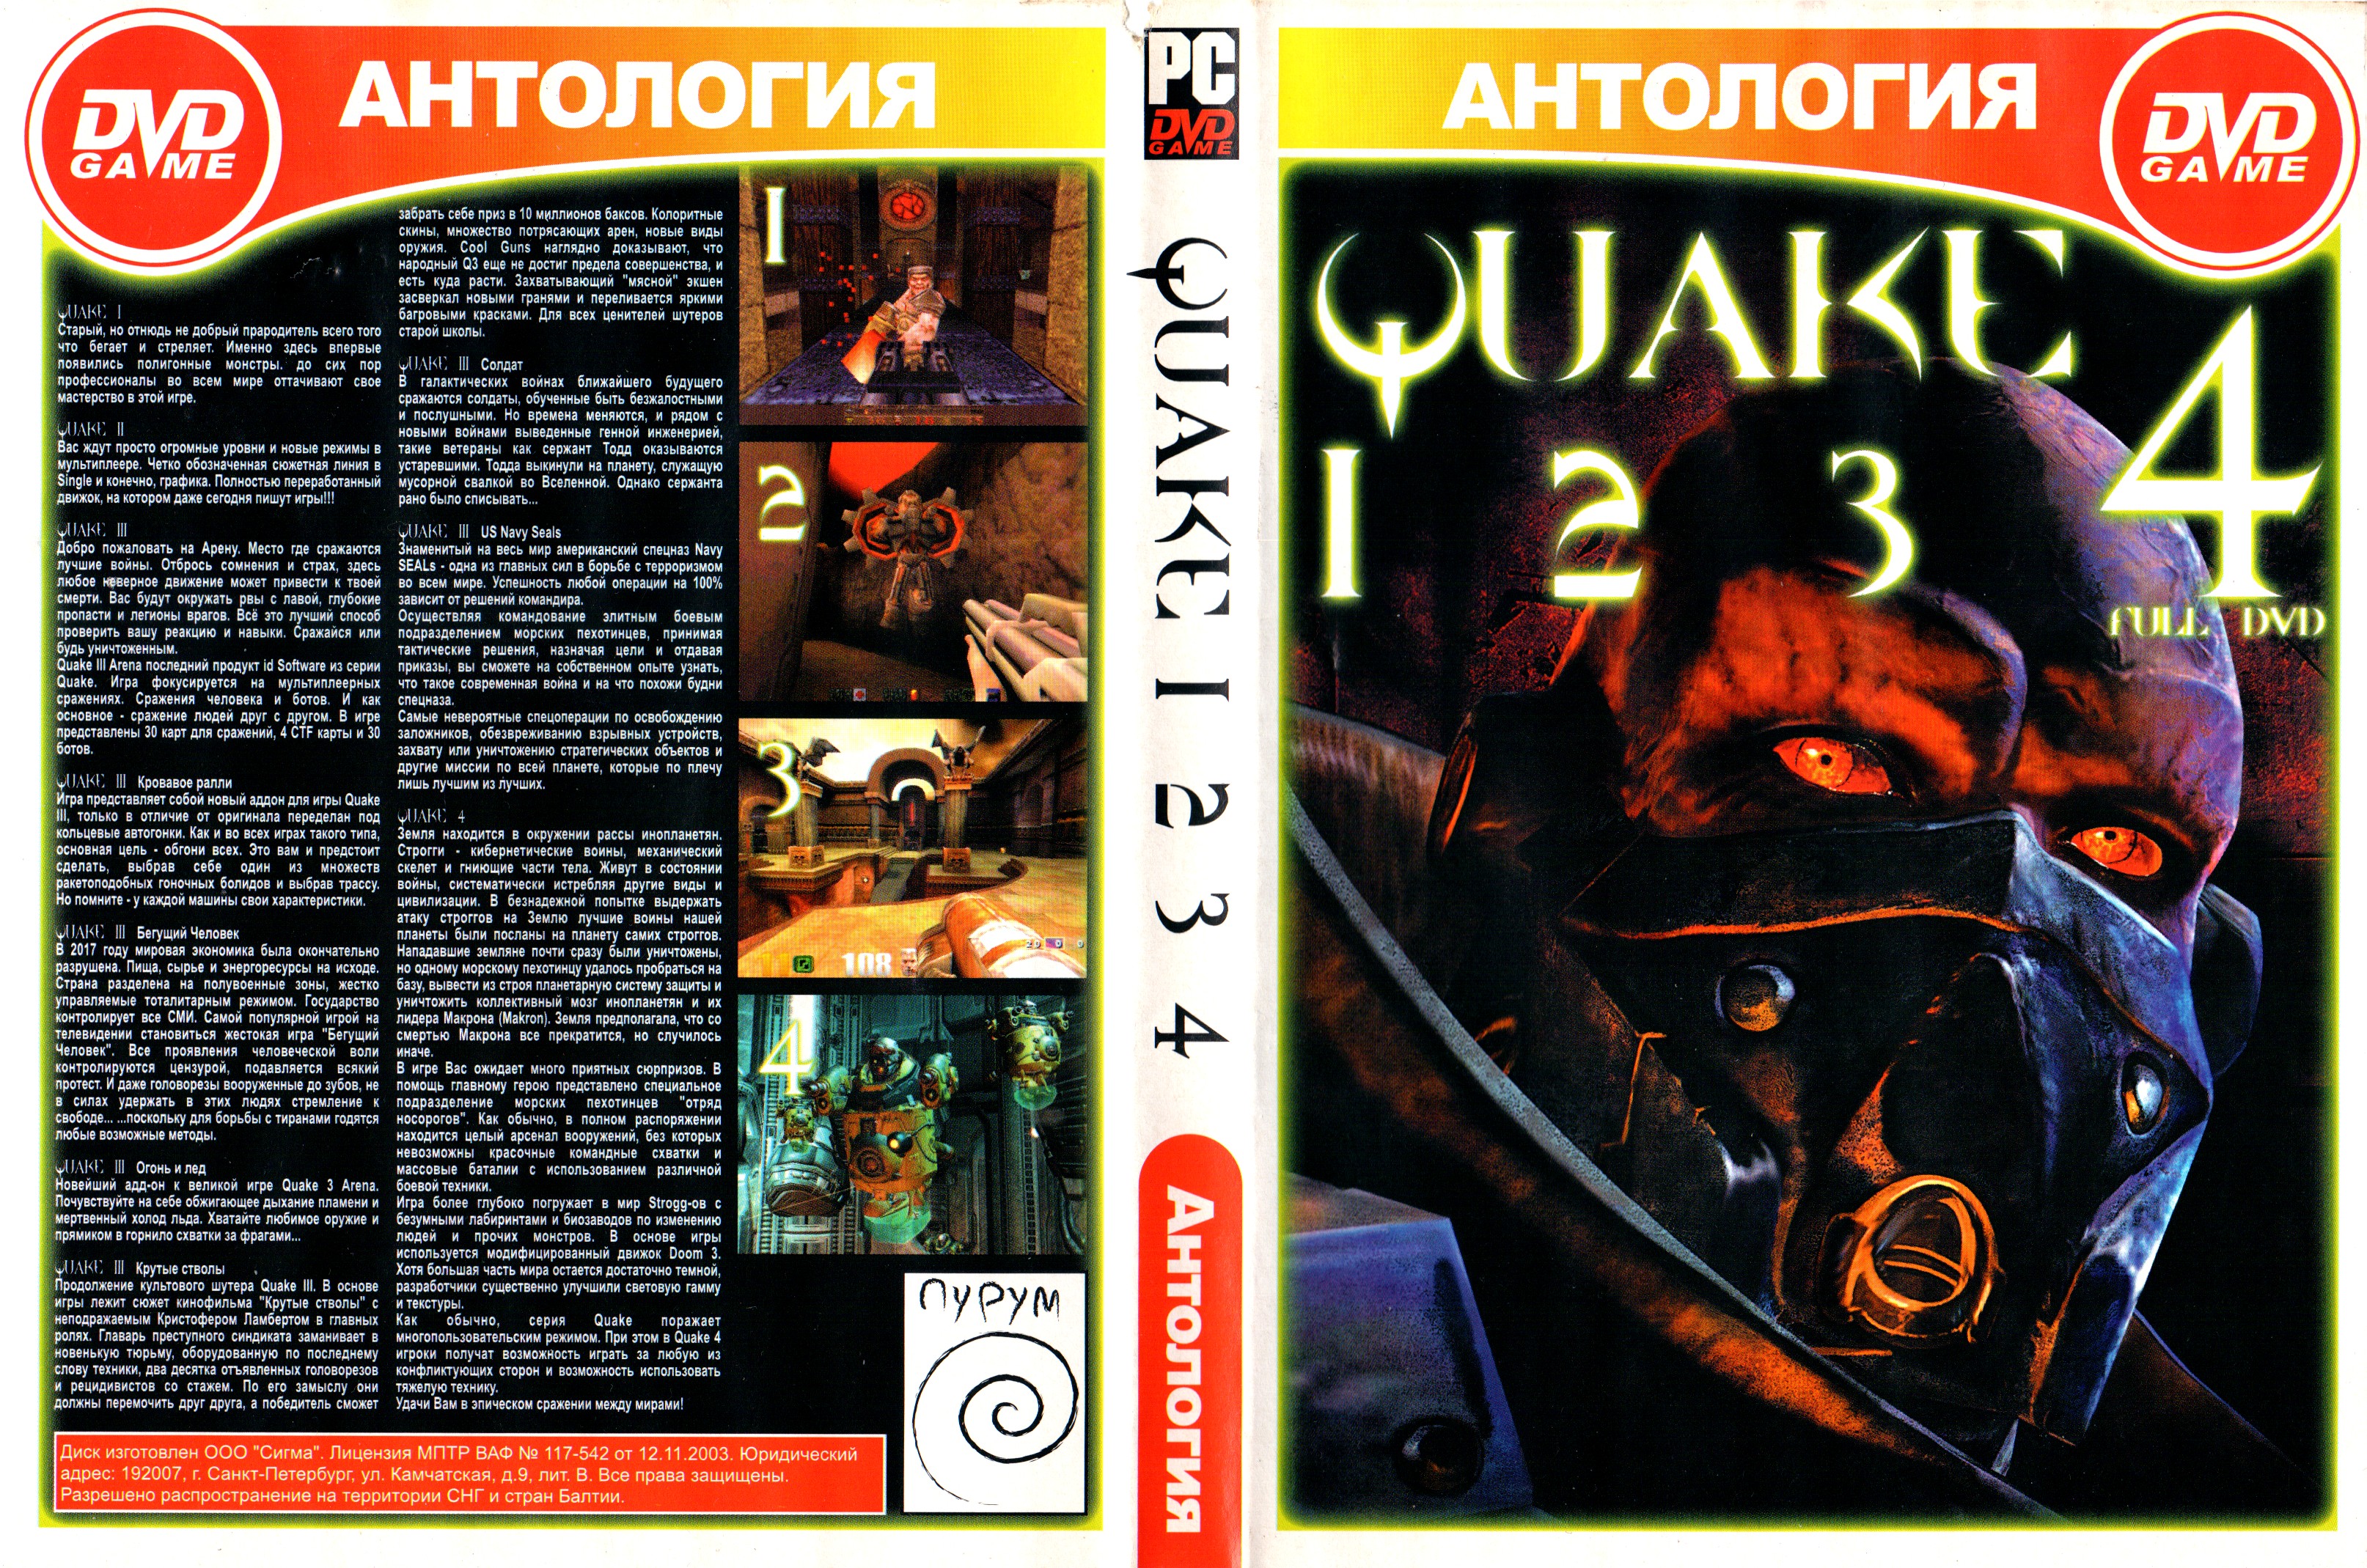 Антология секретного клуба. Quake антология диск. Quake 1996 диск. Quake 4 коробка DVD Box. Антология старых игр.